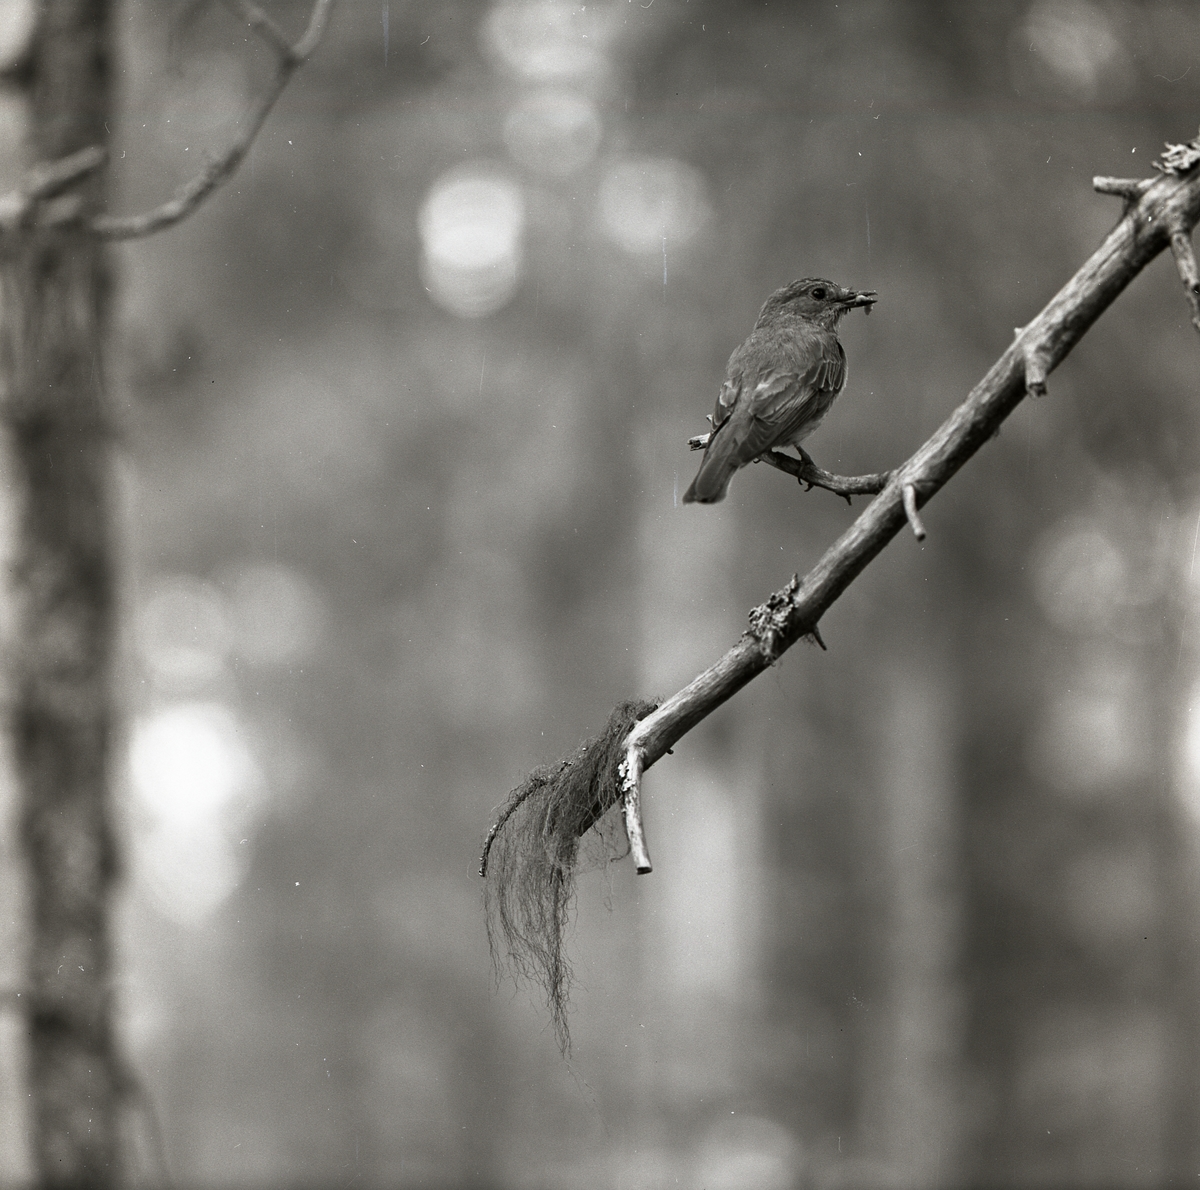 En flugsnappare har fångat ett byte och håller det i sin näbb. Fågeln har landat på en kal gren som endast pryds av några lavar och mossor. Flugsnapparen befinner sig i förgrunden och längre bak i bilden anas en otydlig skog.